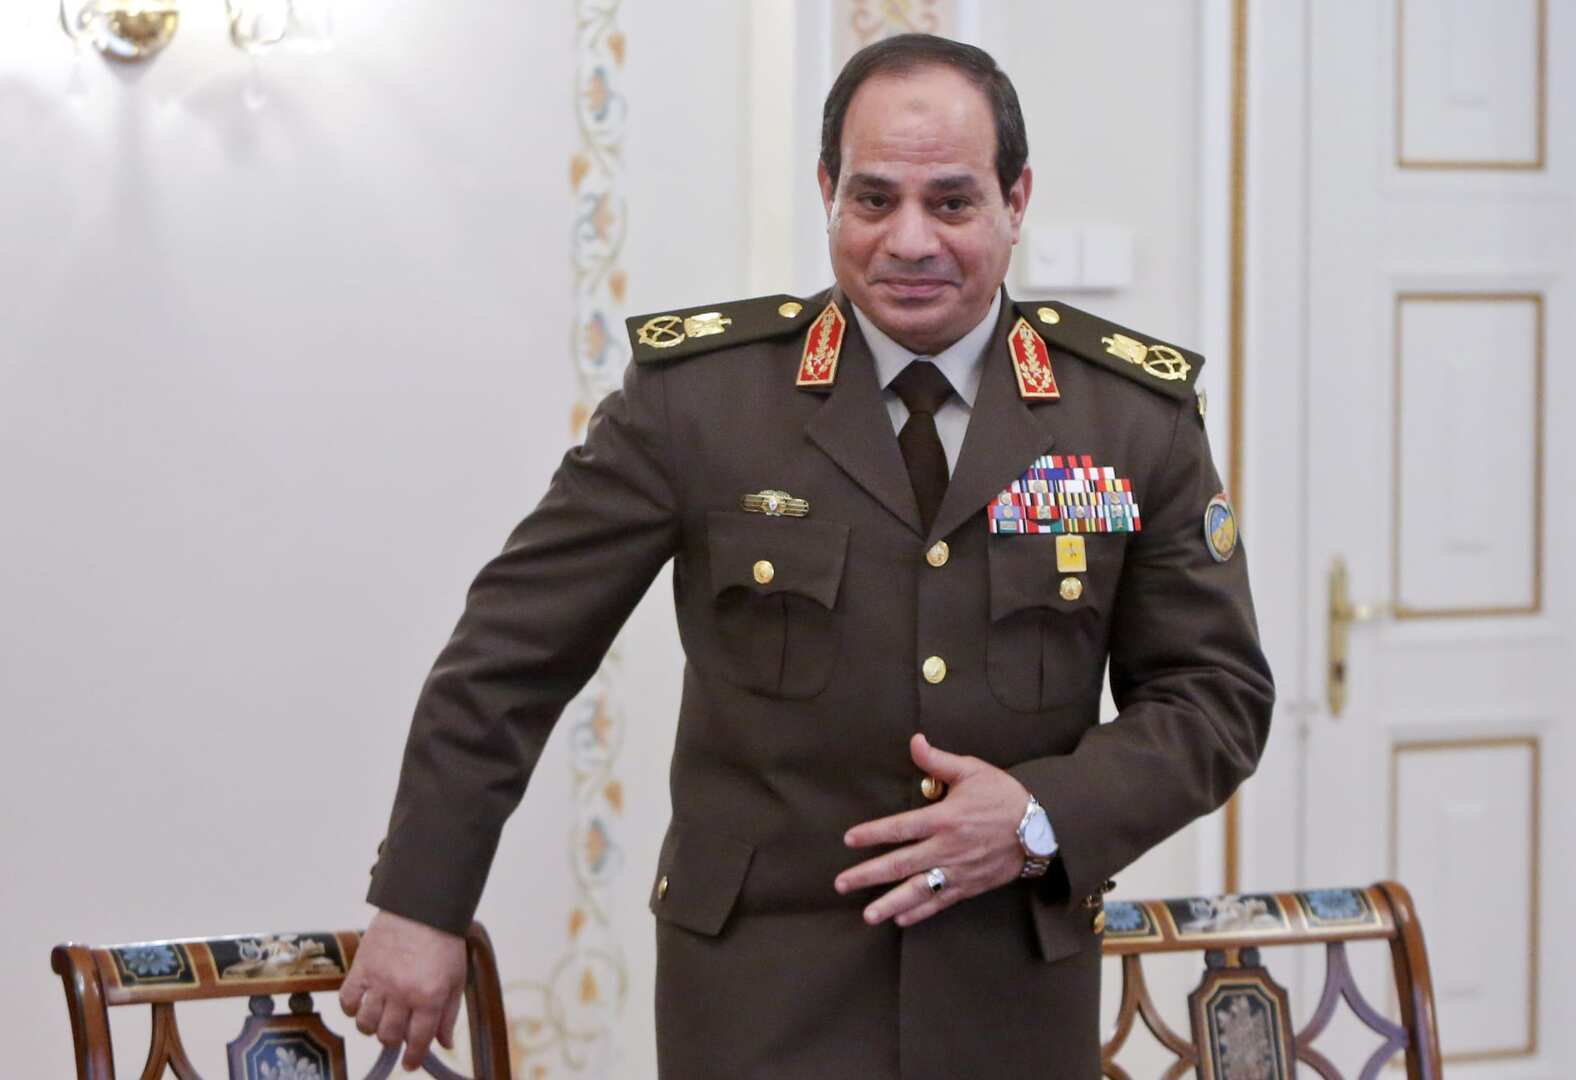 السيسي يكشف عن حلم راوده في منصب وزير الدفاع واستطاع تحقيقه بعد رئاسته لمصر